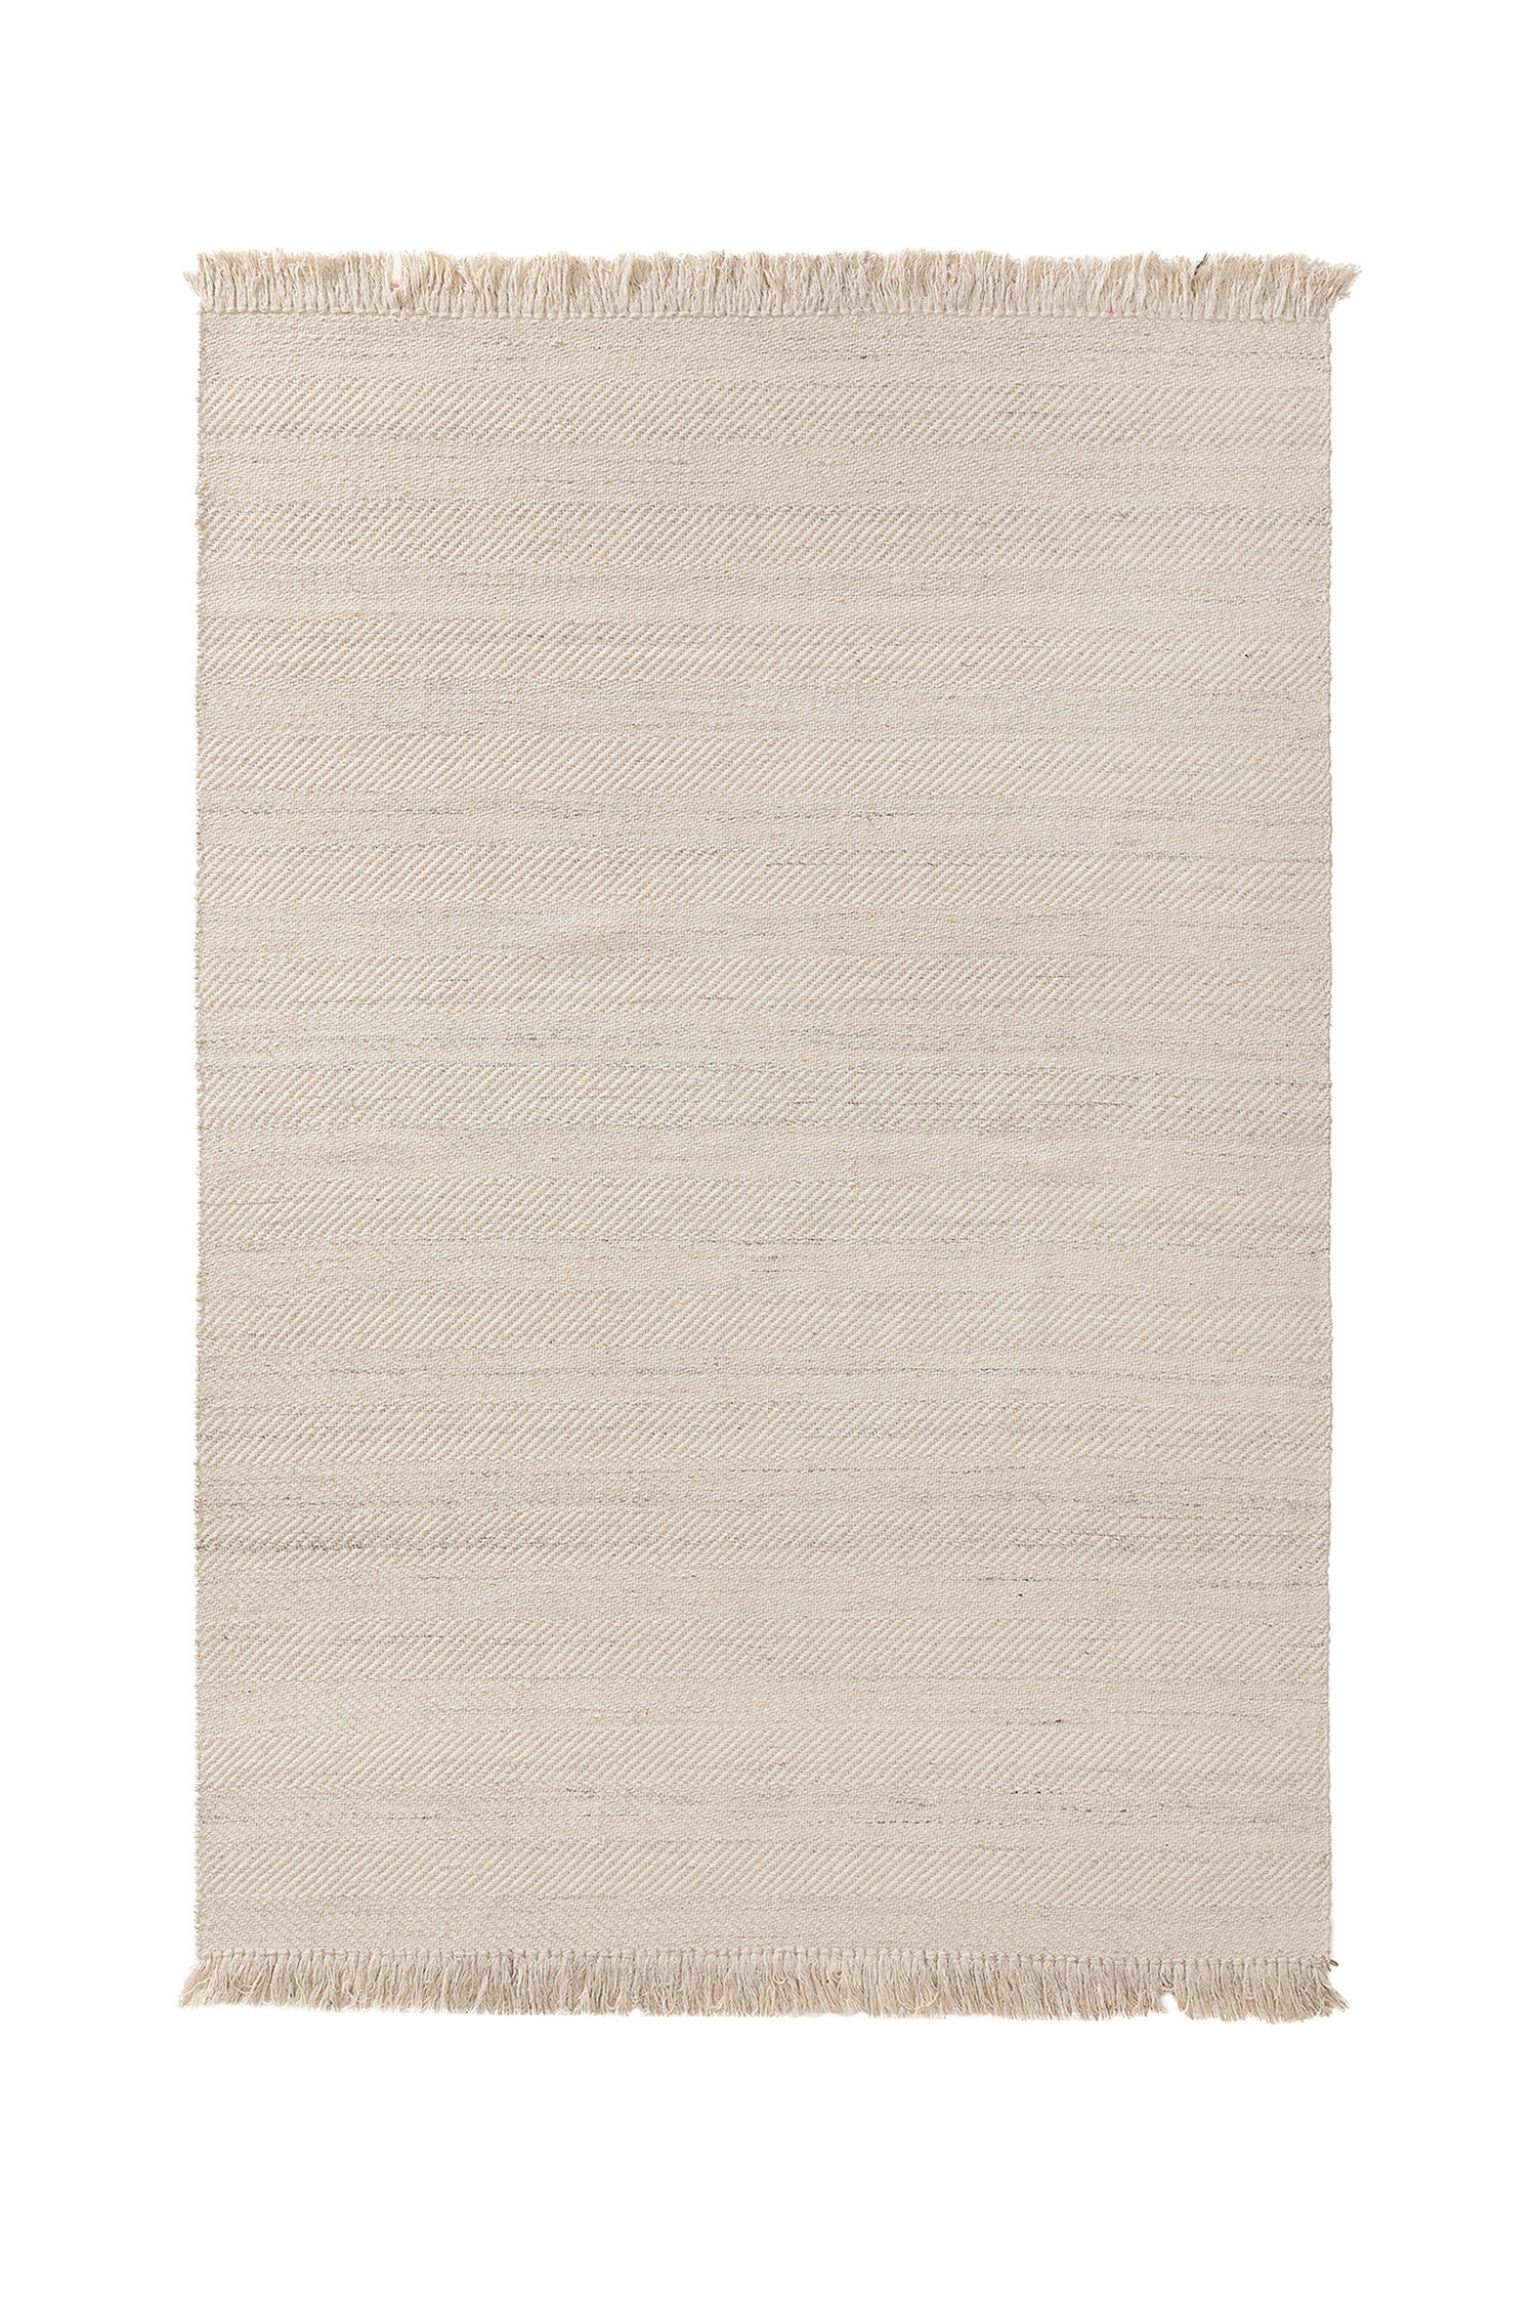 ковер полиэстер lex 465 786 120х170 см цвет кремово бежевый Ковер Benuta Lars Wool, кремовый